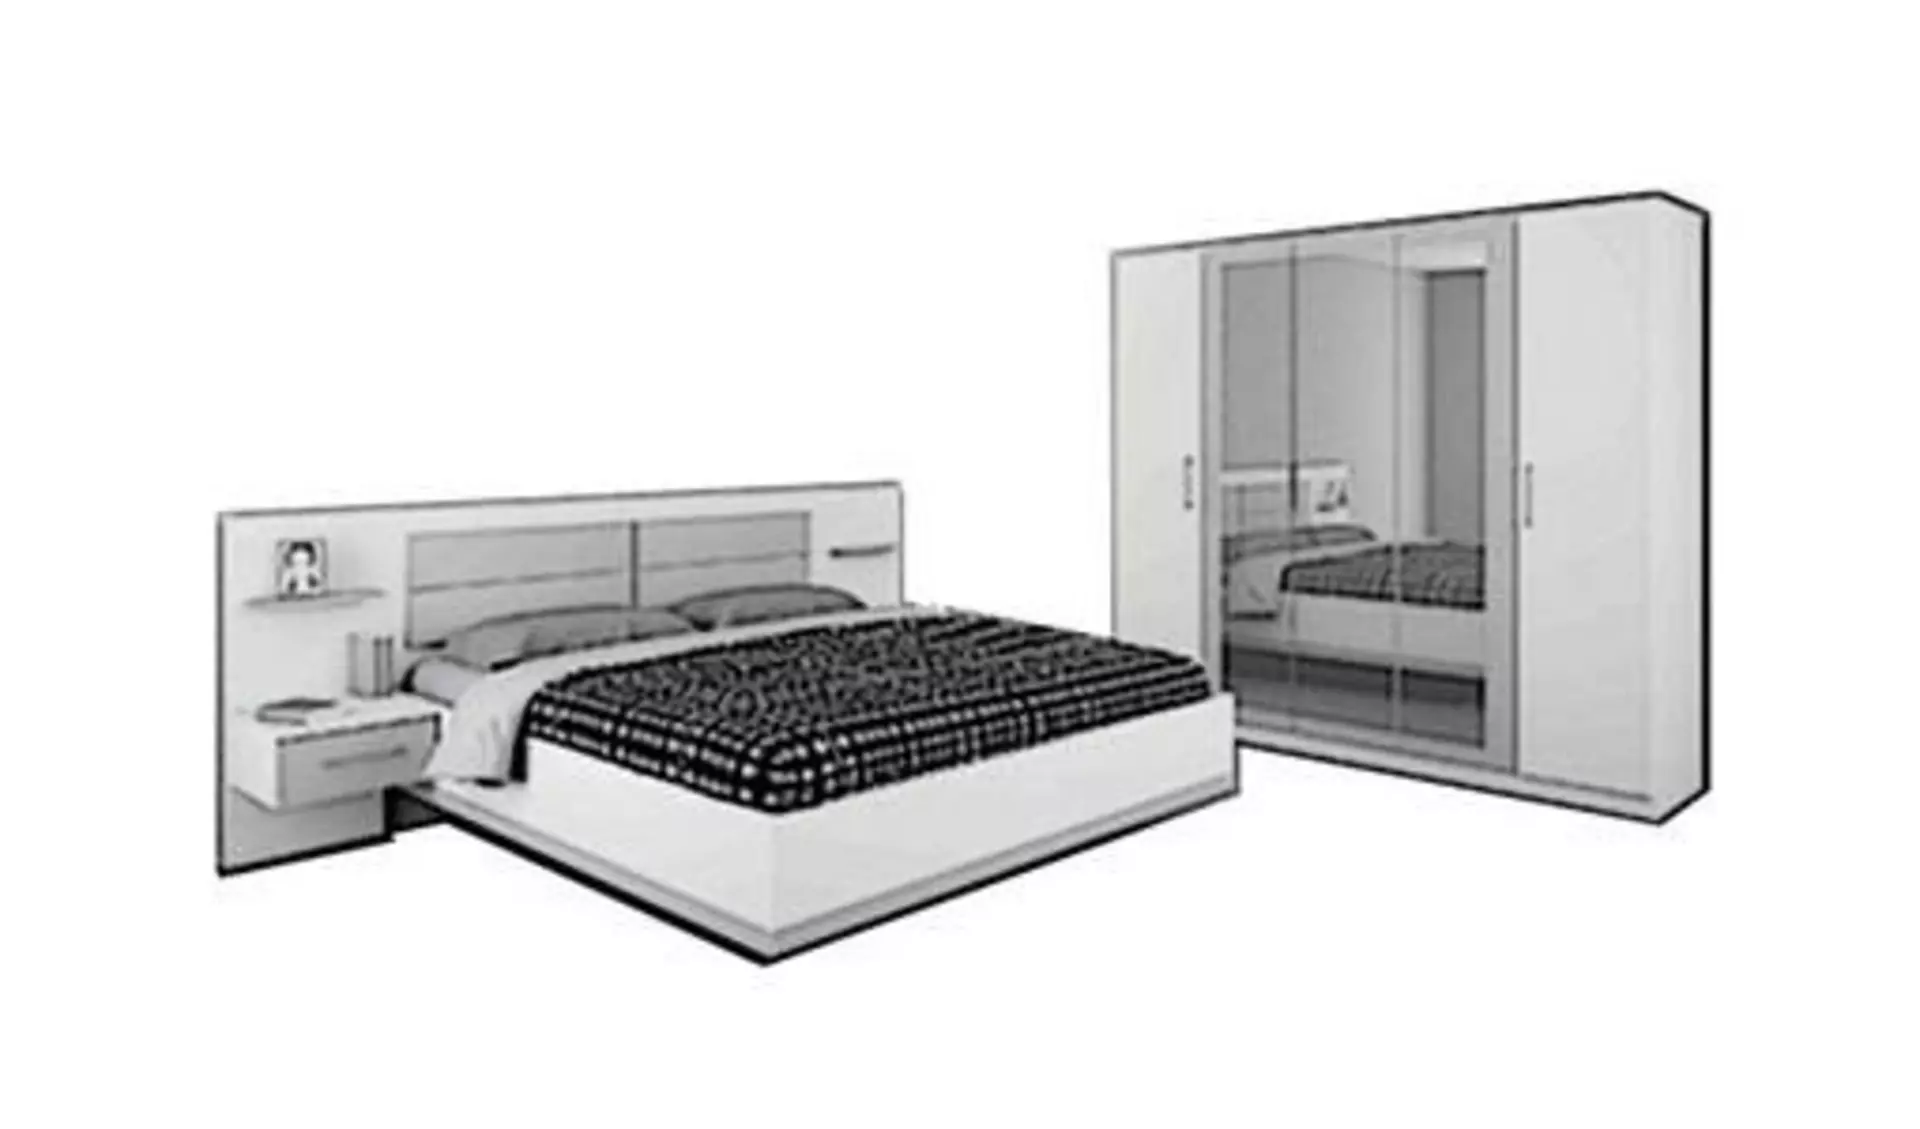 Icon für die Kategorie Schlafzimmer. Das Schlafzimmer wird durch eine Doppelbett mit integrierten Ablagen, sowie einem großen Kleiderschrank dargestellt.